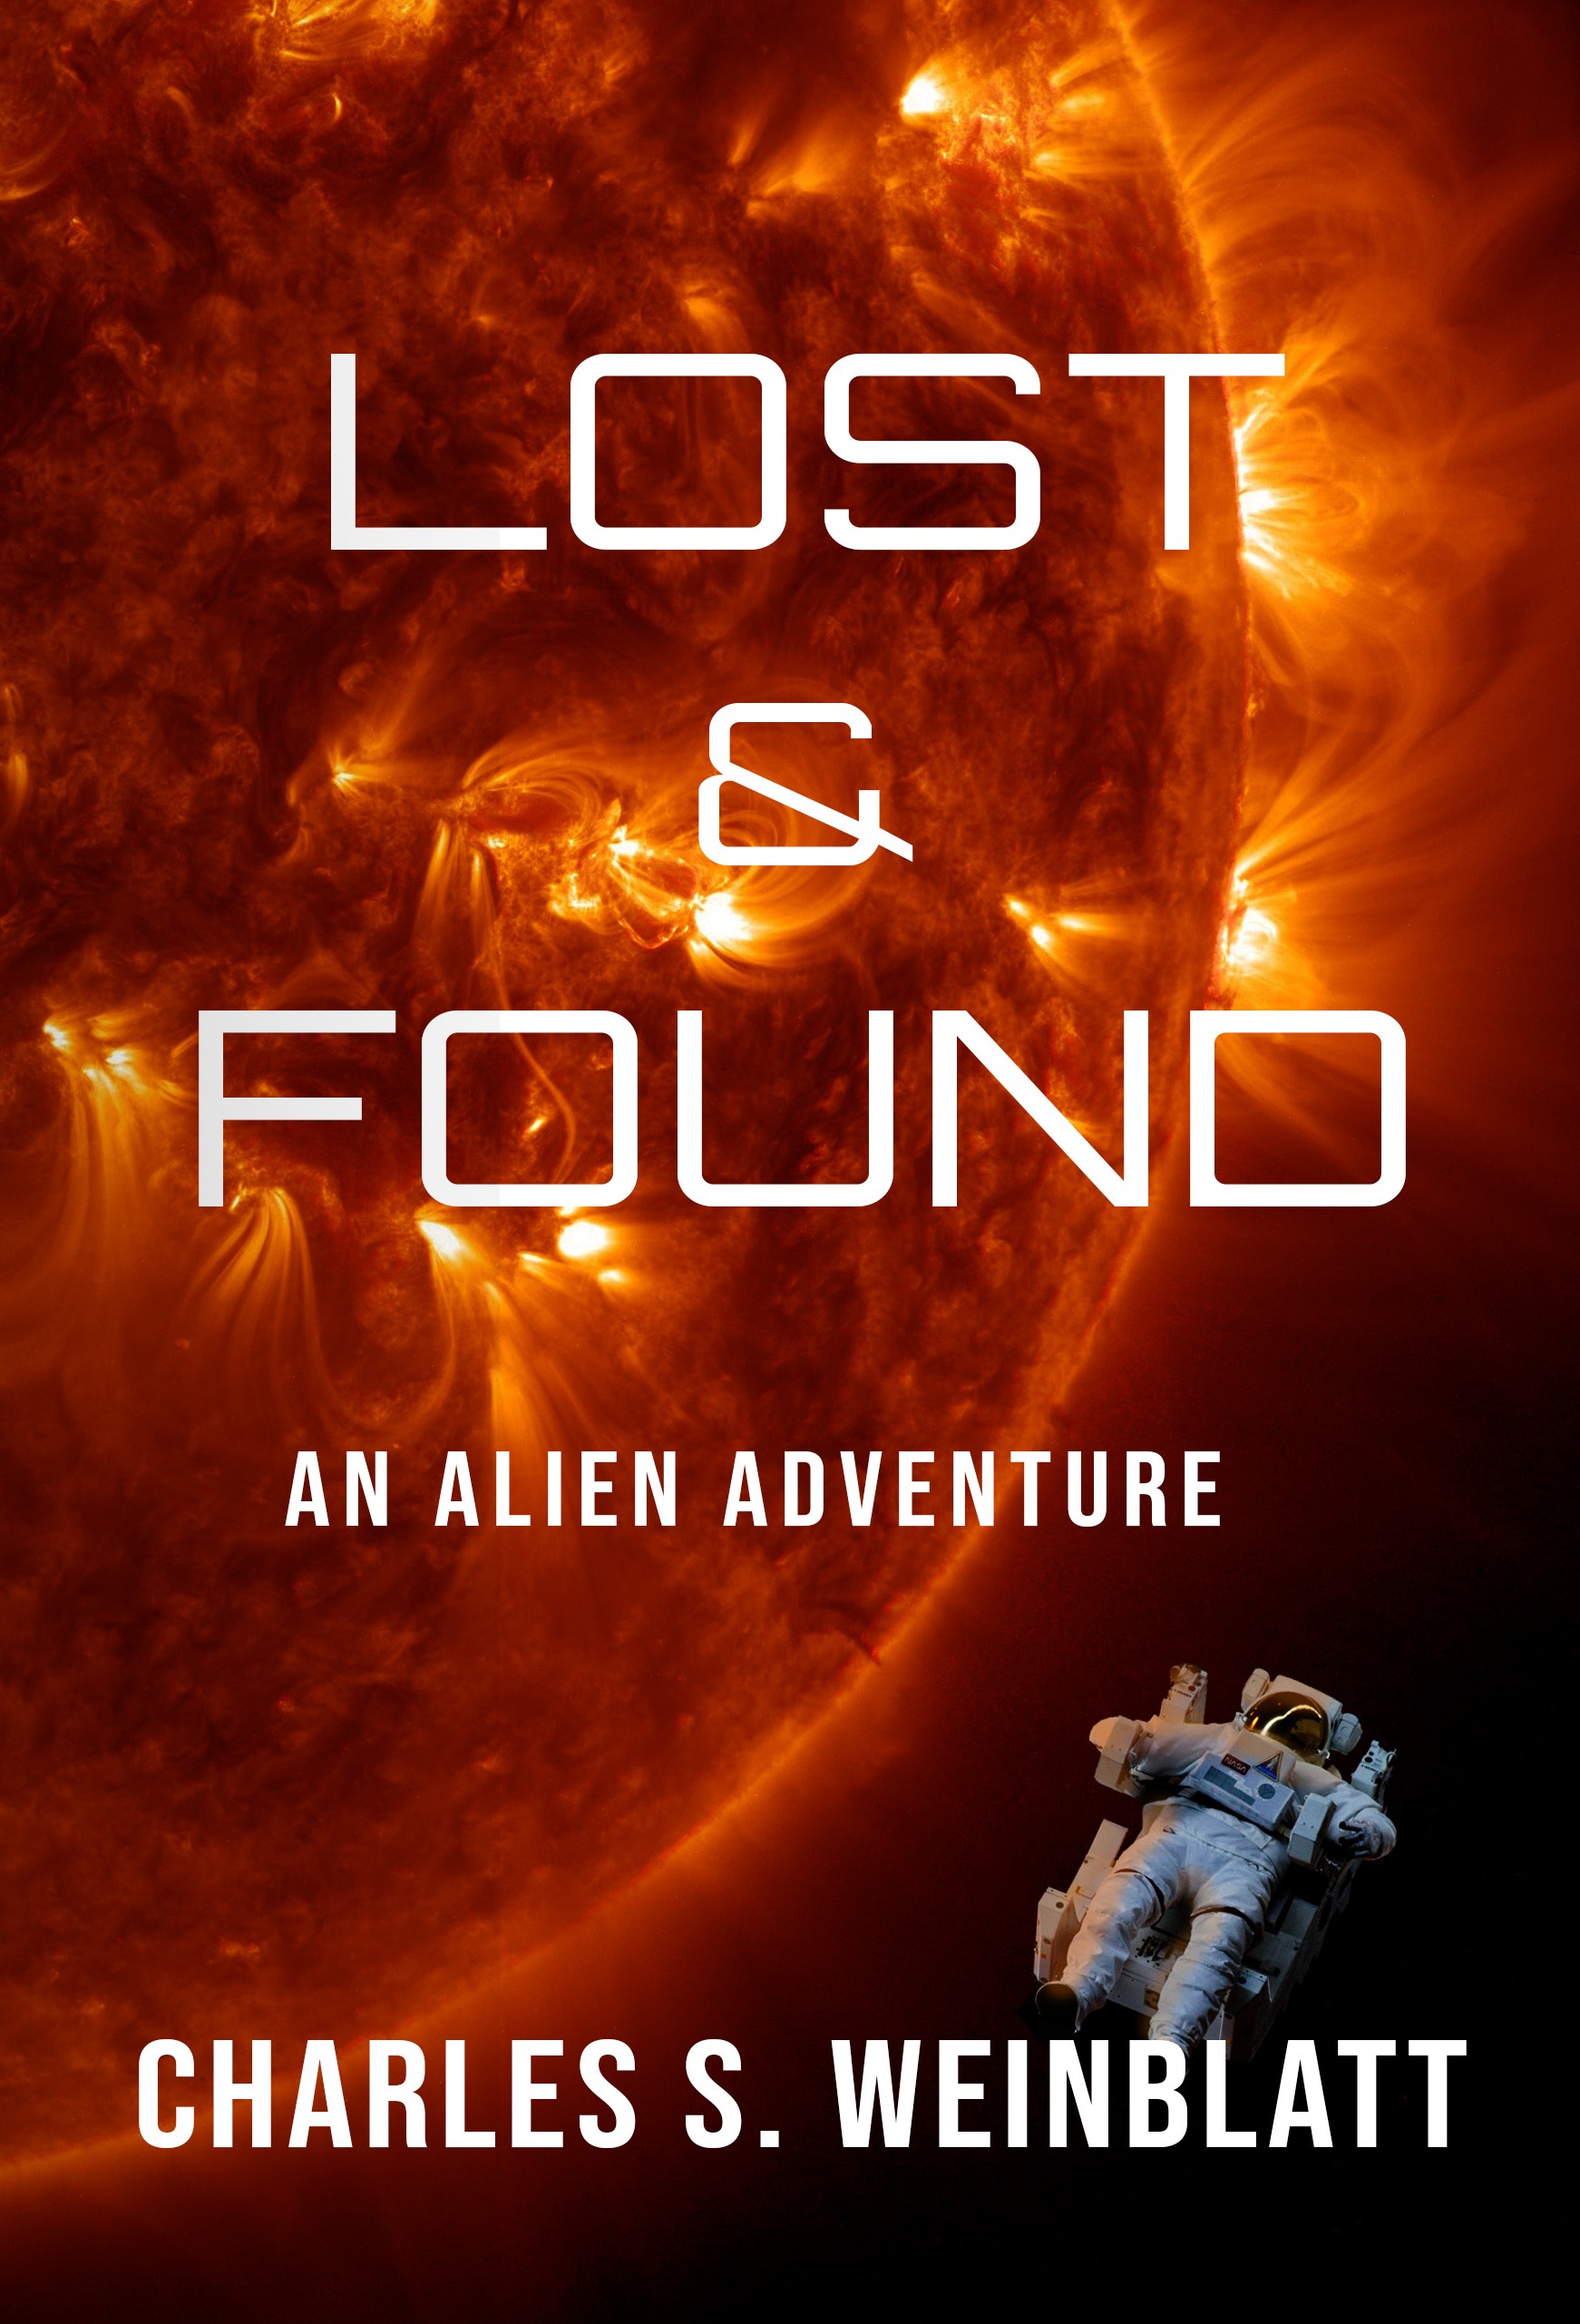 Lost & Found: An Alien Adventure